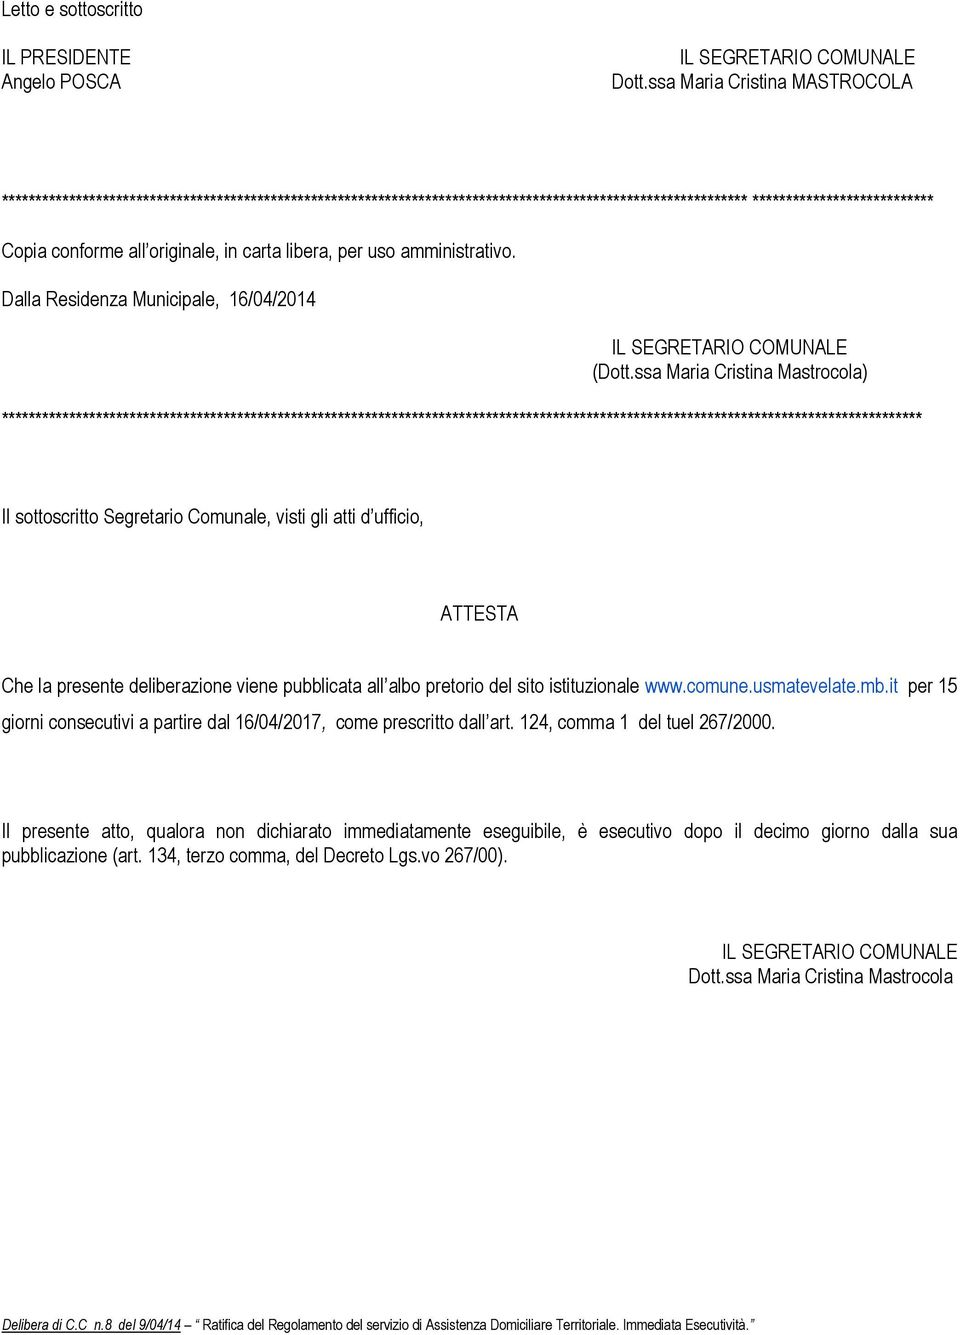 in carta libera, per uso amministrativo. Dalla Residenza Municipale, 16/04/2014 (Dott.